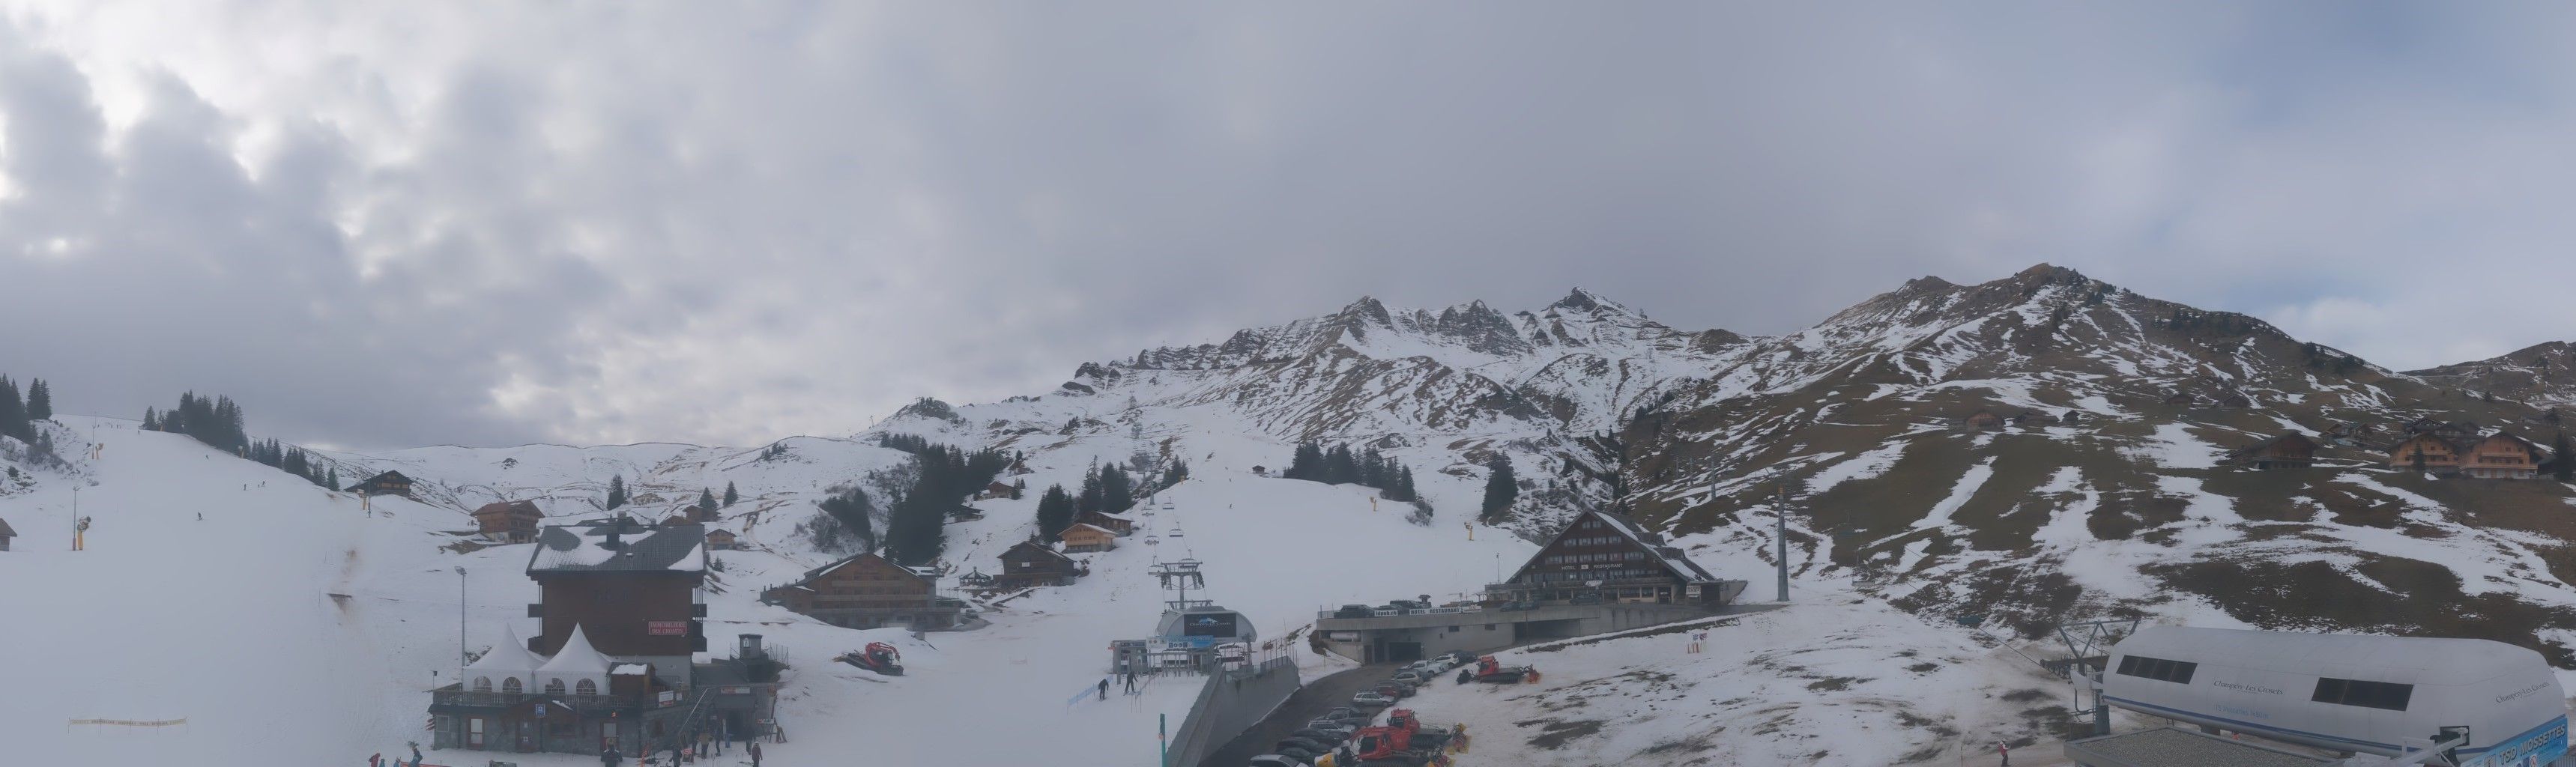 Magere sneeuwcondities aan de noordkant, zoals hier in het Zwitserse gedeelte van Portes du Soleil